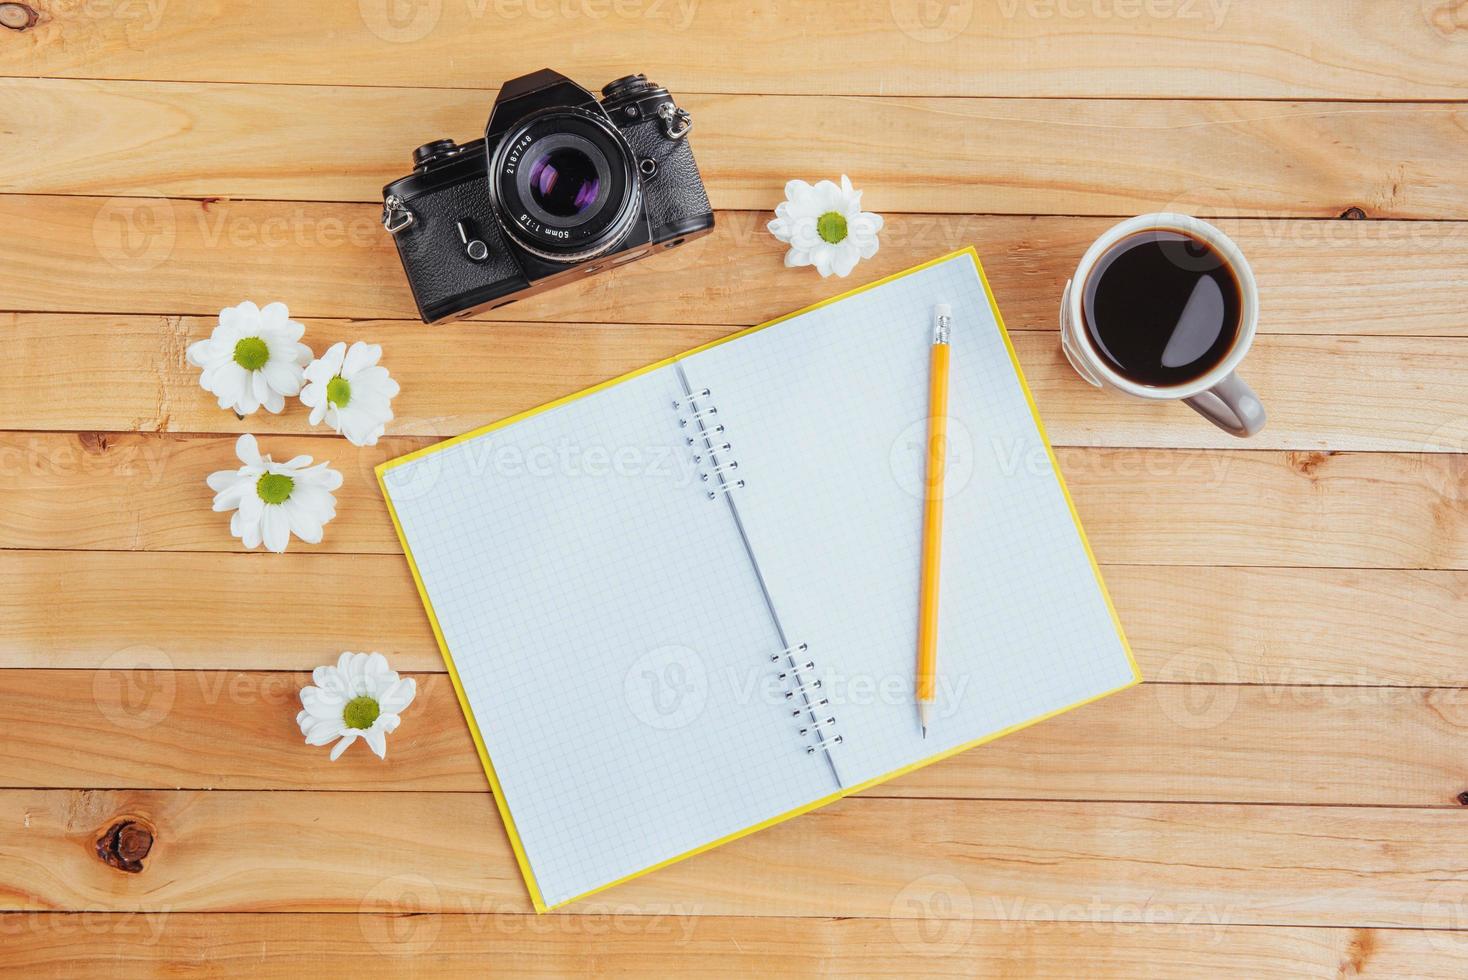 auf hölzernem Hintergrund Notebook-Bleistift, Kaffee und Blumen. foto